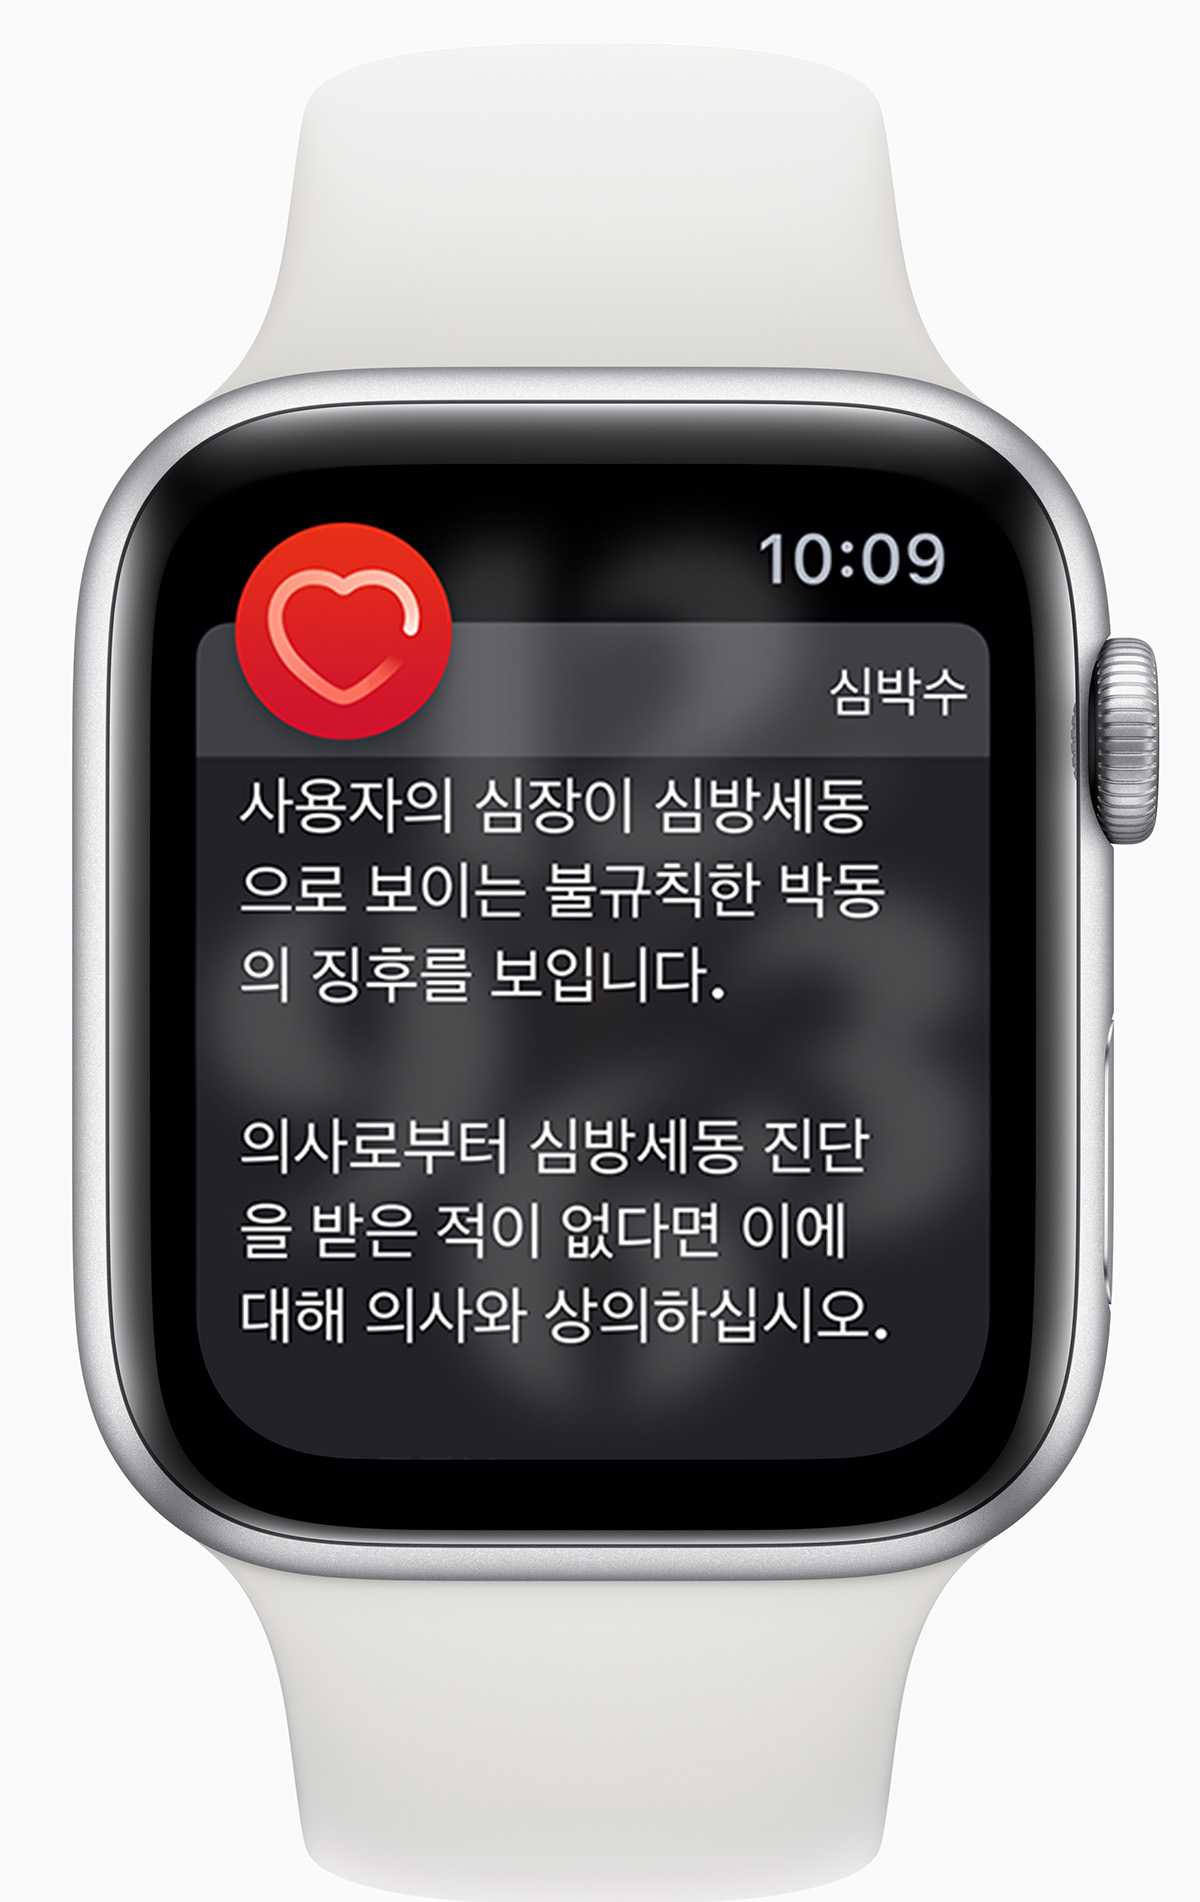 韓國 Apple Watch 將開放心電圖和心律不整通知功能 | Apple Watch, ECG心電圖, iOS 14.2, watchOS | iPhone News 愛瘋了